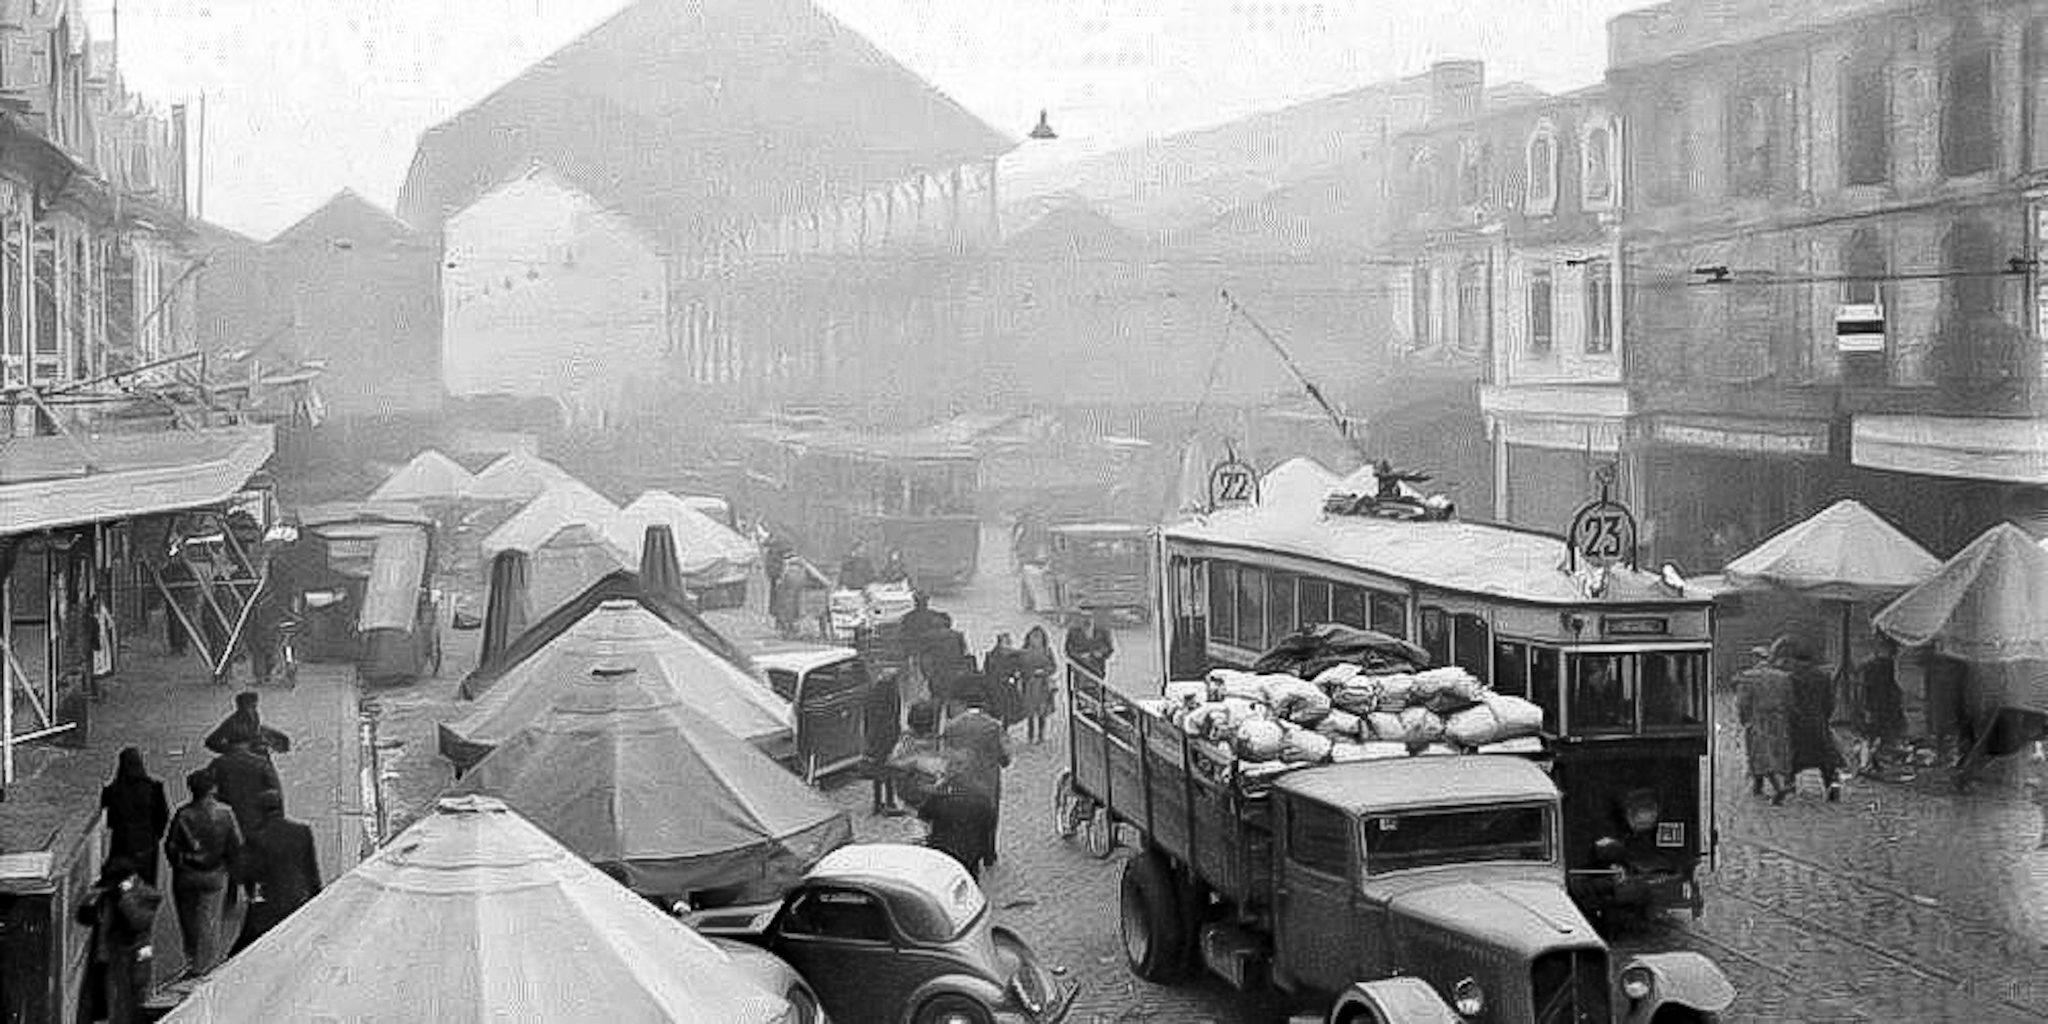 Le marché des Capucins en 1950. J'y ai travaillé parfois, la nuit, pour gagner un peu d'argent. Très formateur !